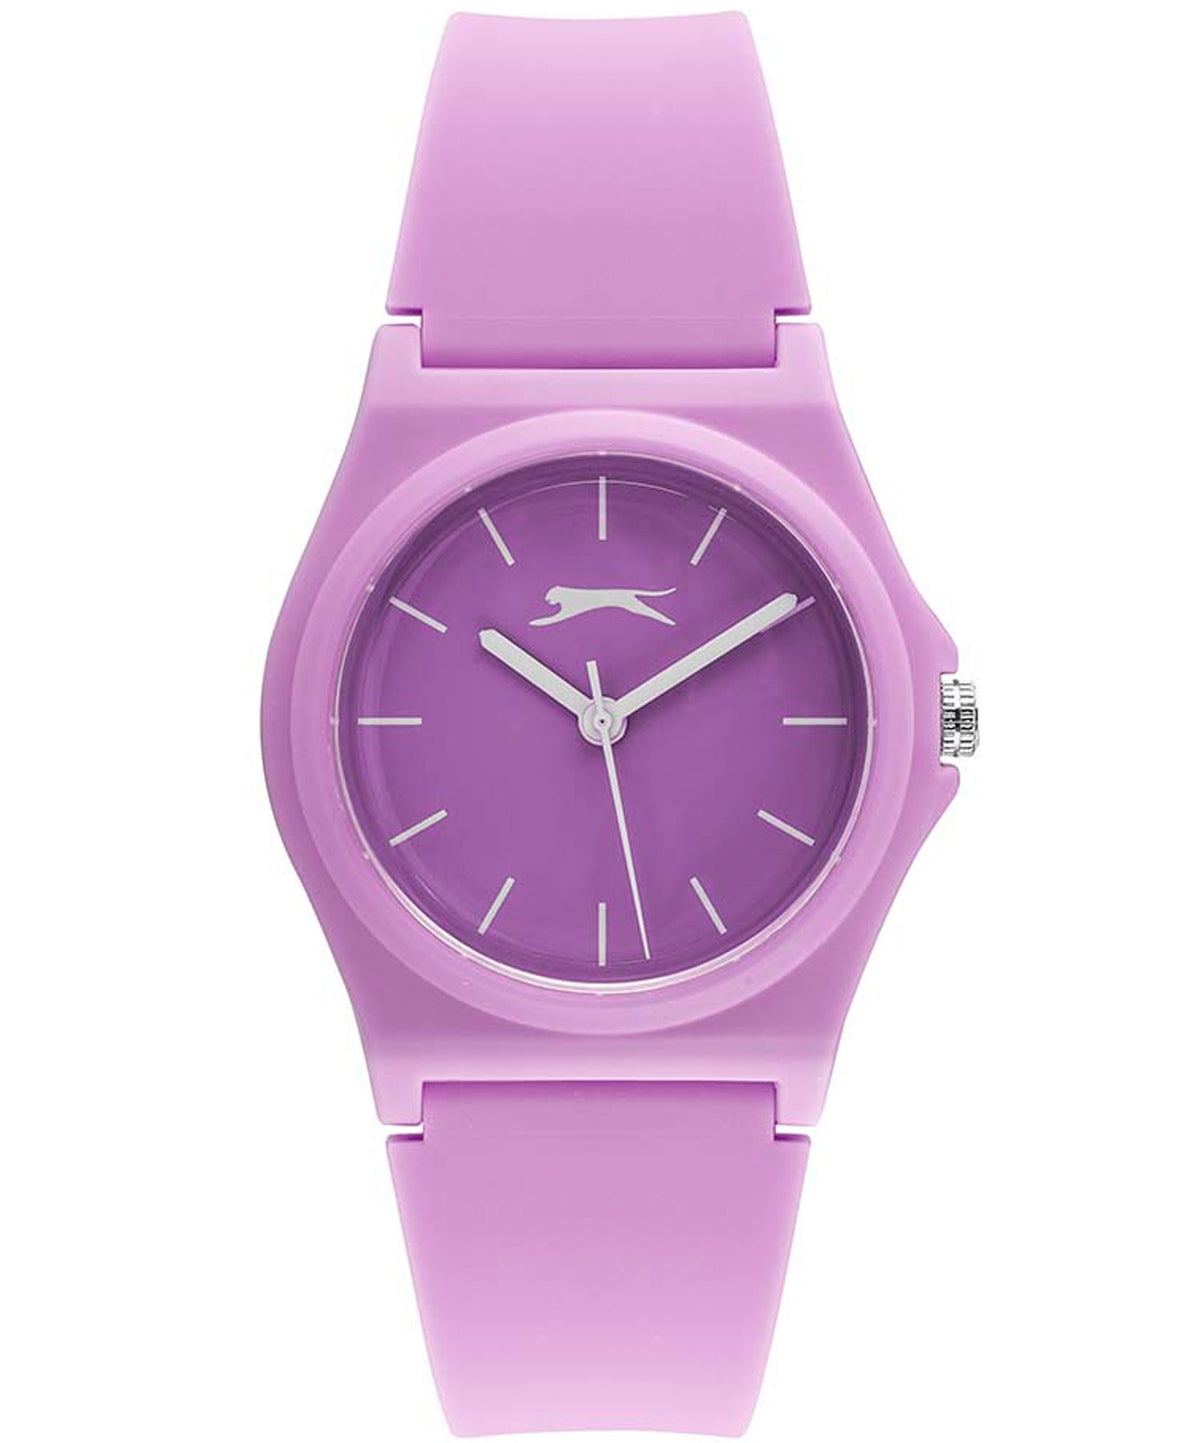 Slazenger Sport Women's Watch Purple dial Purple Silicone Strap, SL.09.6571.3.02